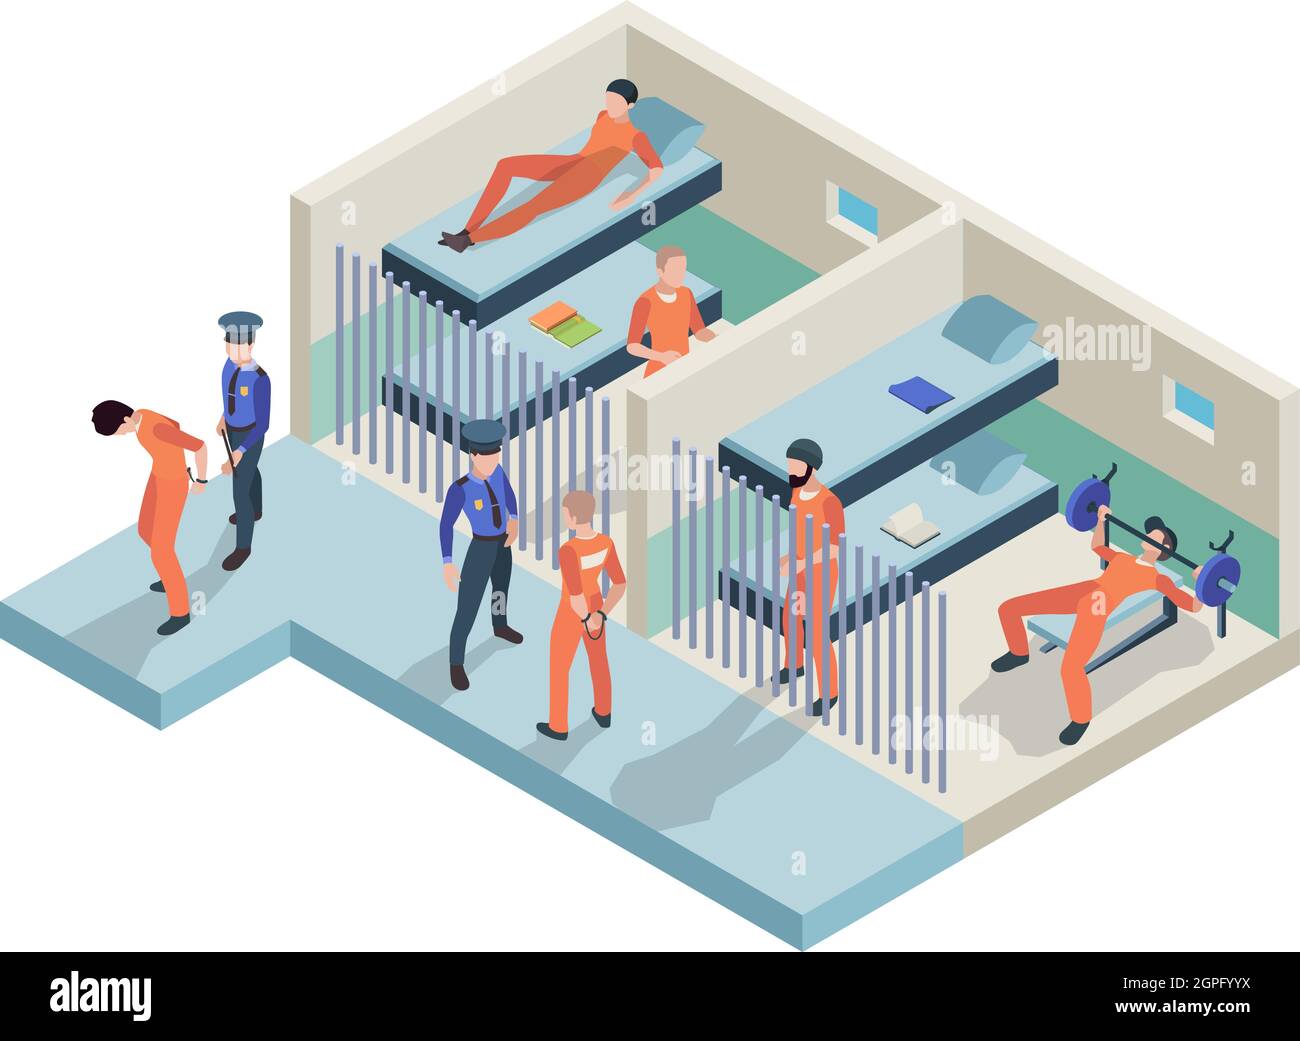 Gefängnisinnenraum. Gefangene, die in Kameras sitzen, gehen Polizeiwachen in Gefängniszimmern Insasse Personen Vektor isometrisch Stock Vektor